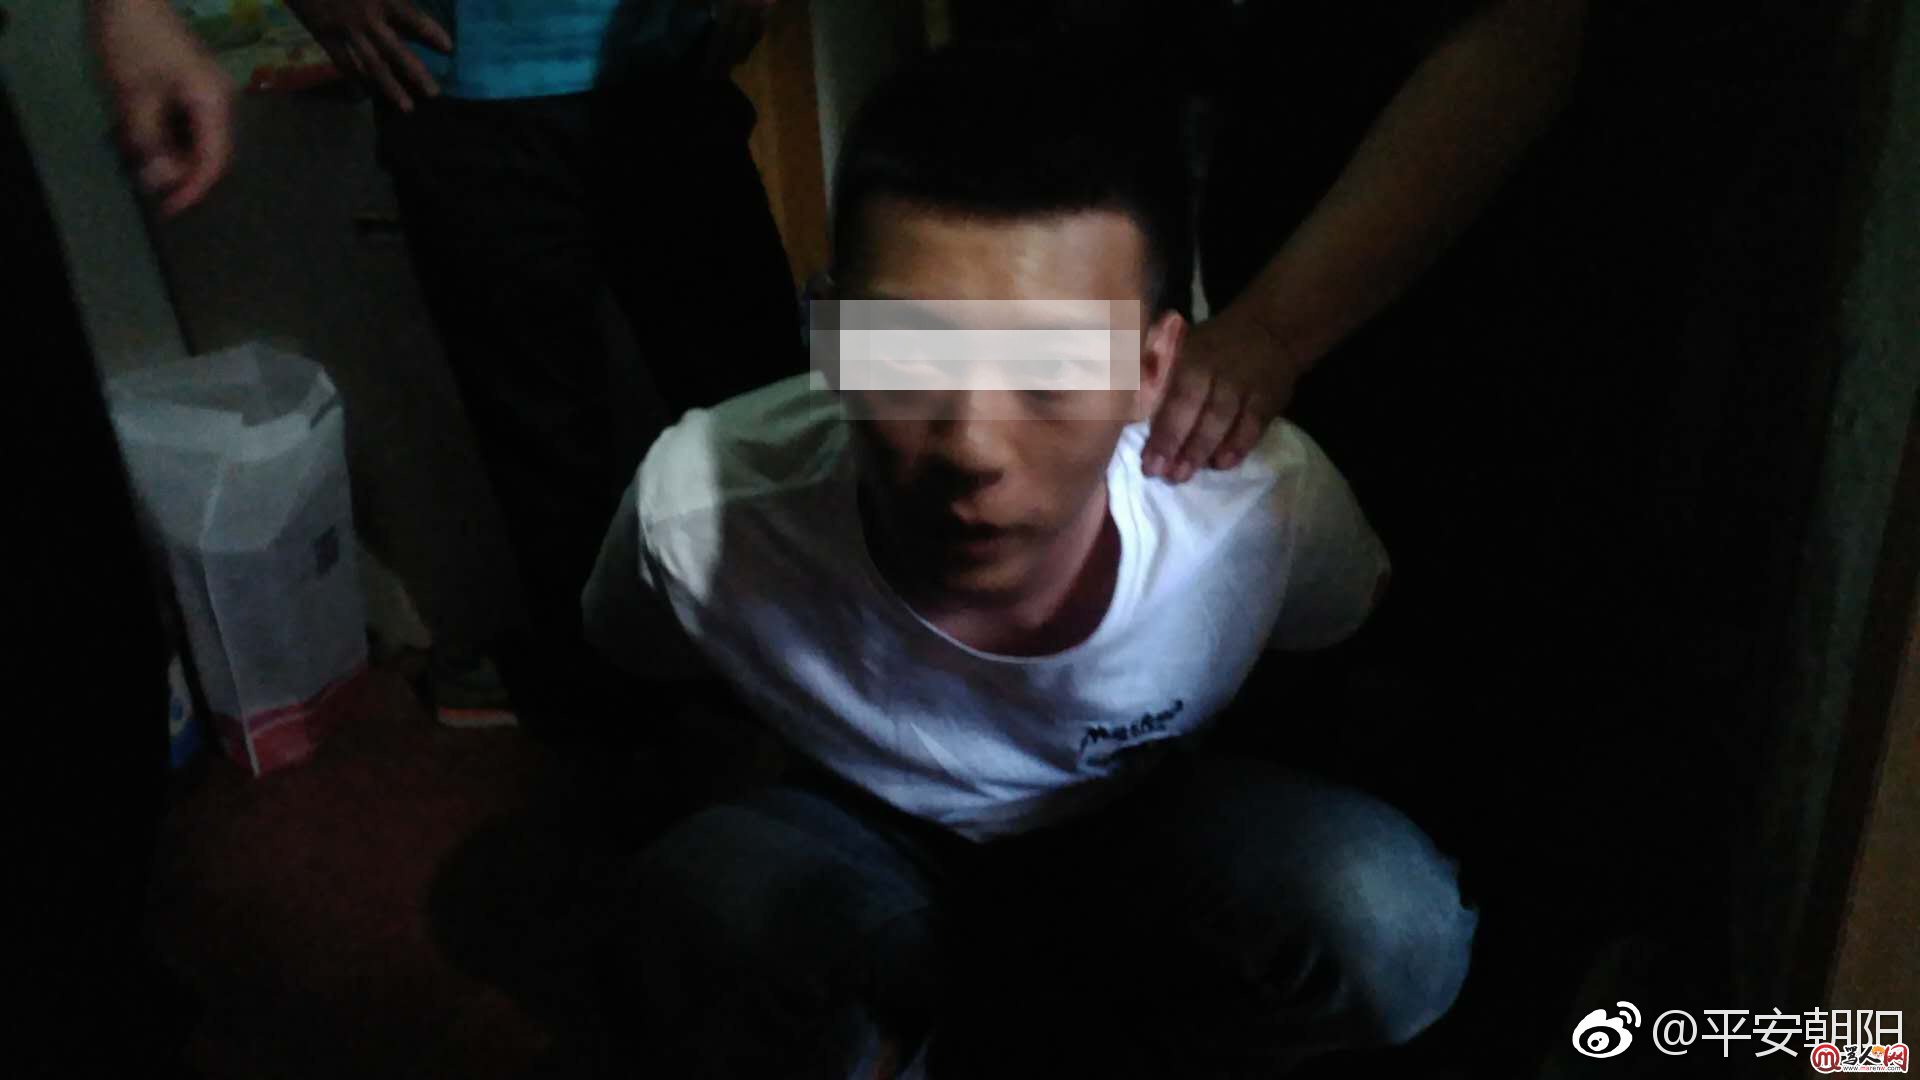 男子在北京双井街头疑用专业格斗术打人 已被抓获